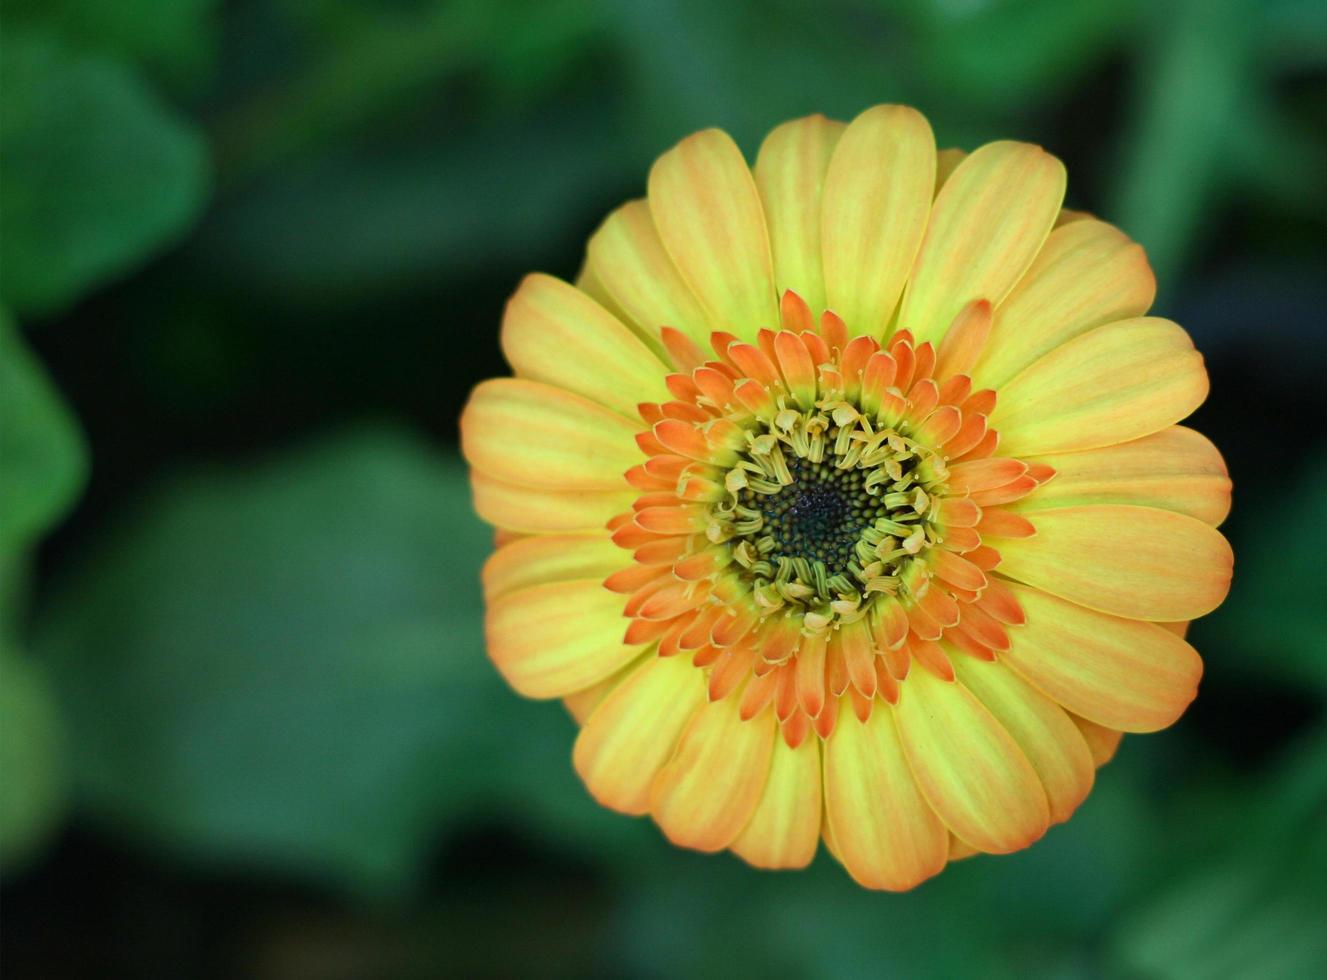 fleur de gerbera orange photo